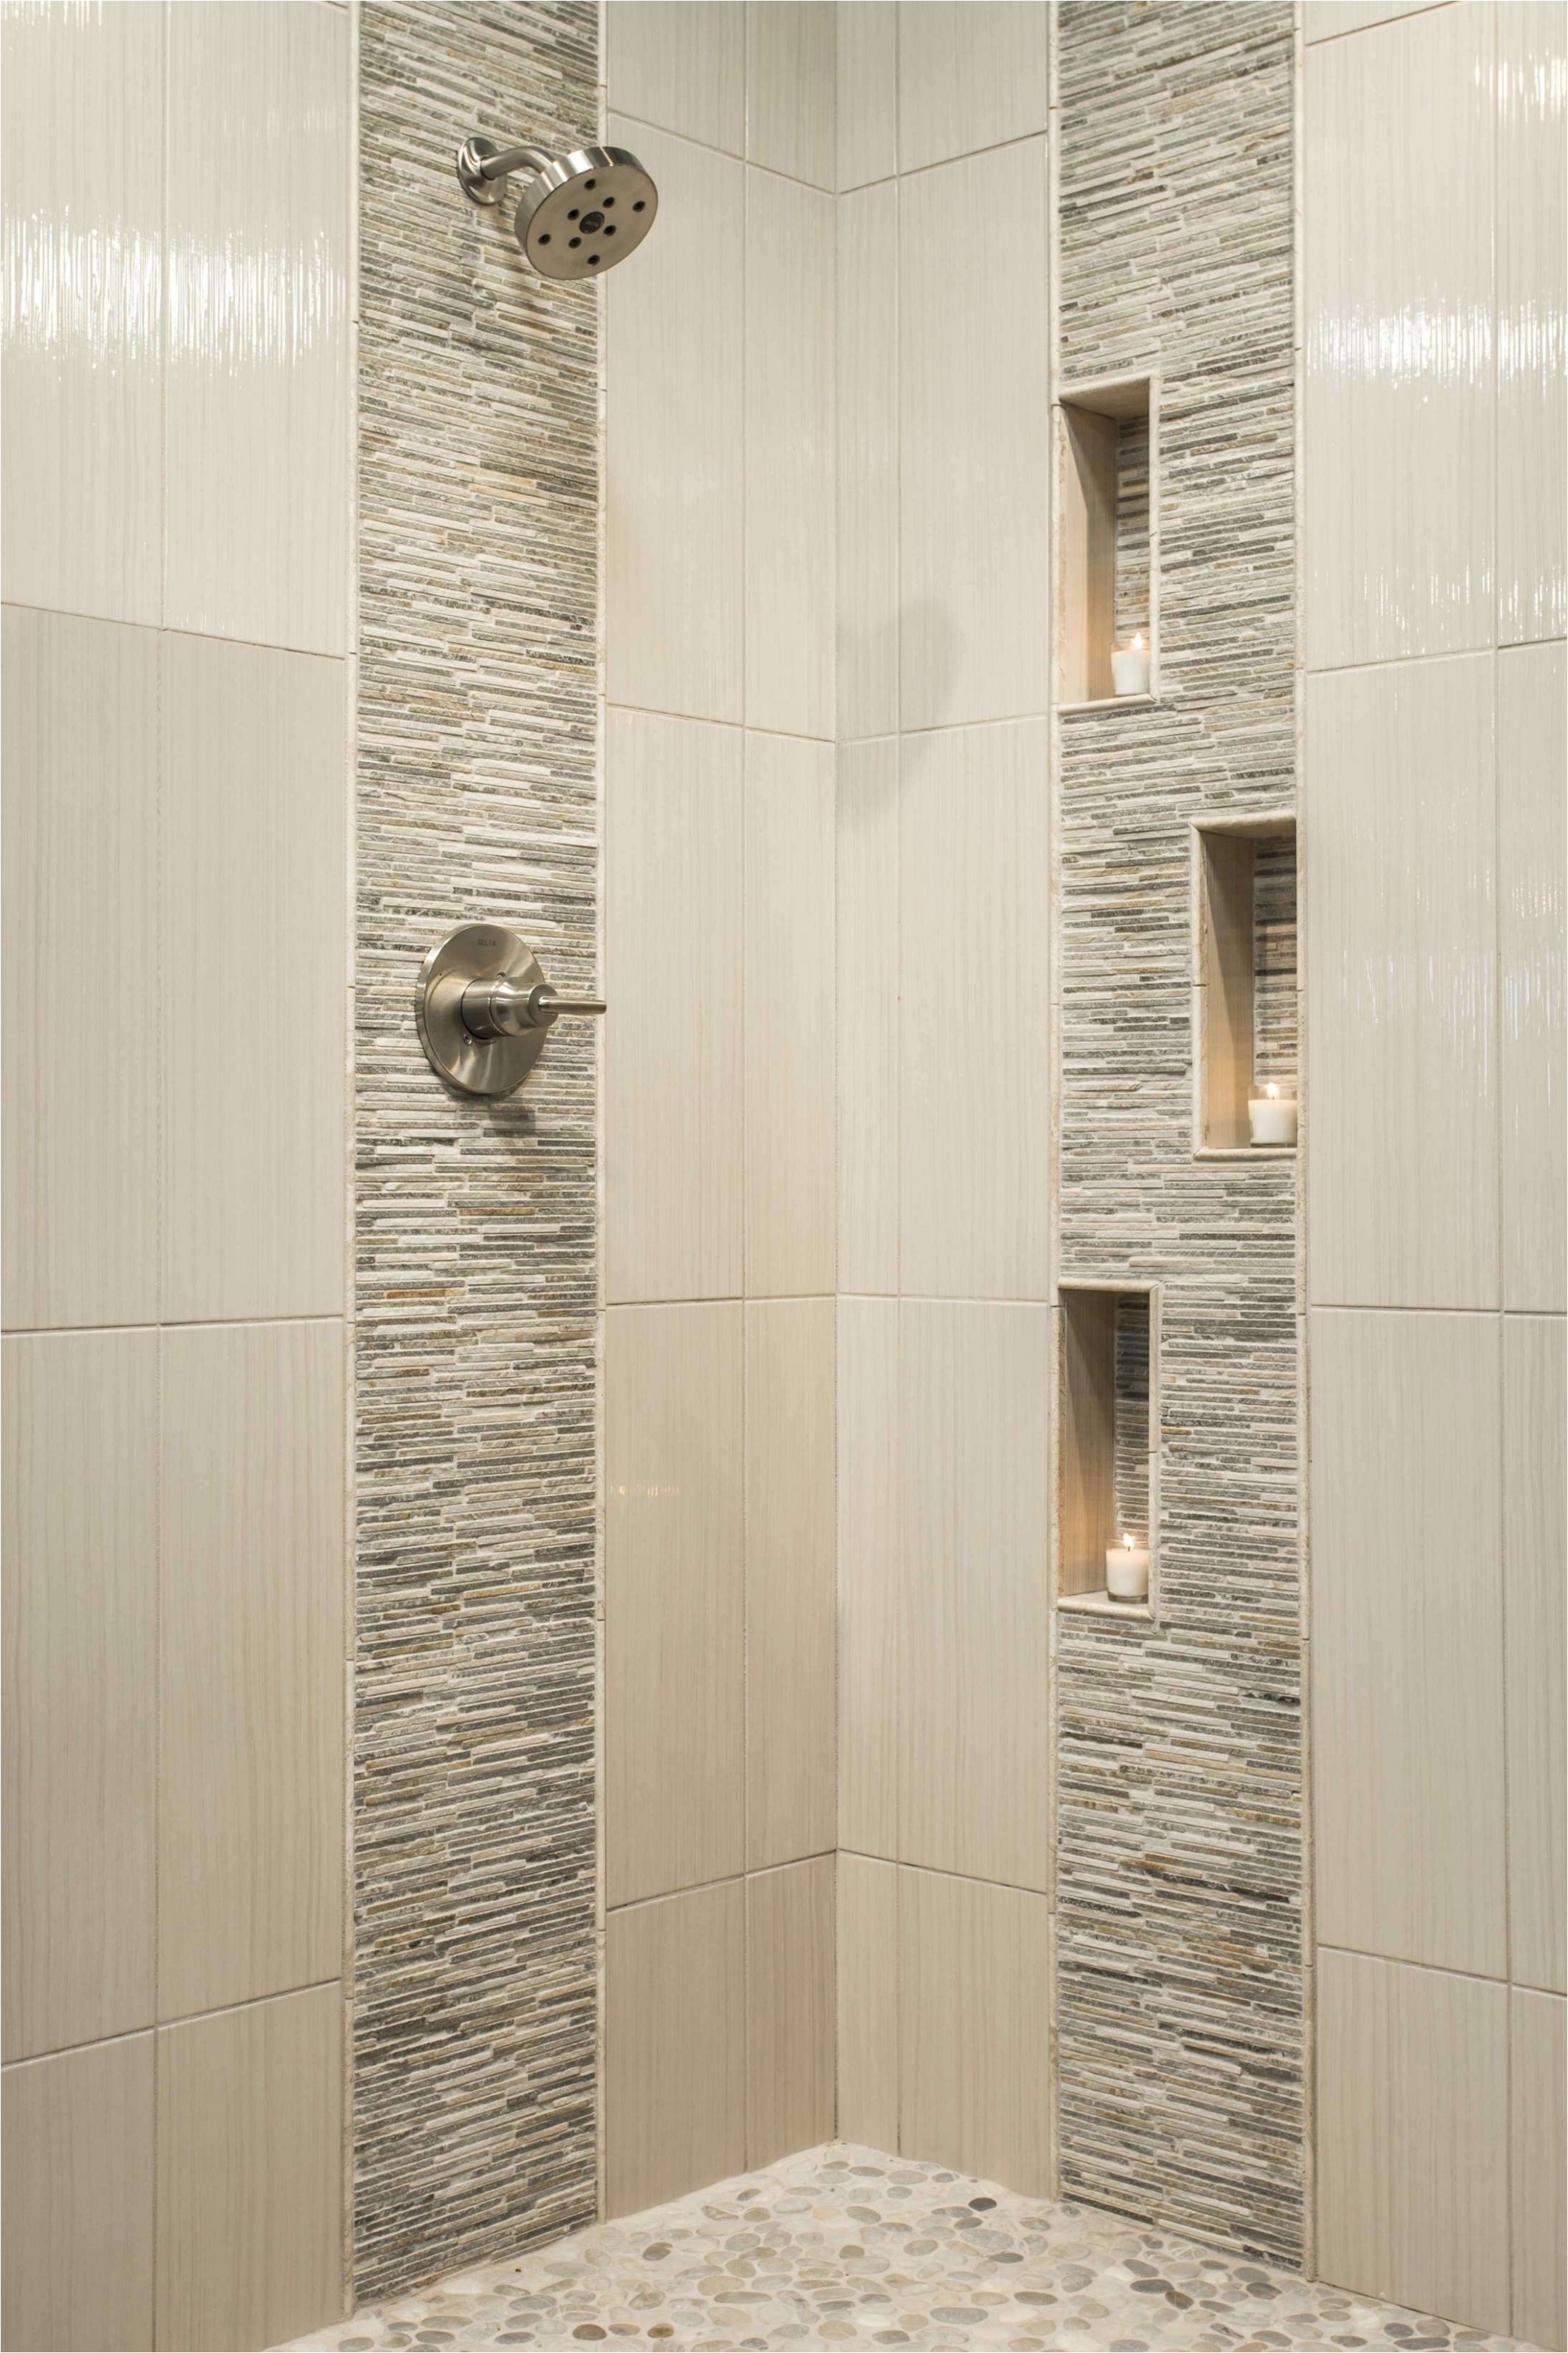 Tile Ideas For A Small Bathroom New Bathroom Floor Tiles Design Valid Floor Tiles Mosaic Bathroom 0d New